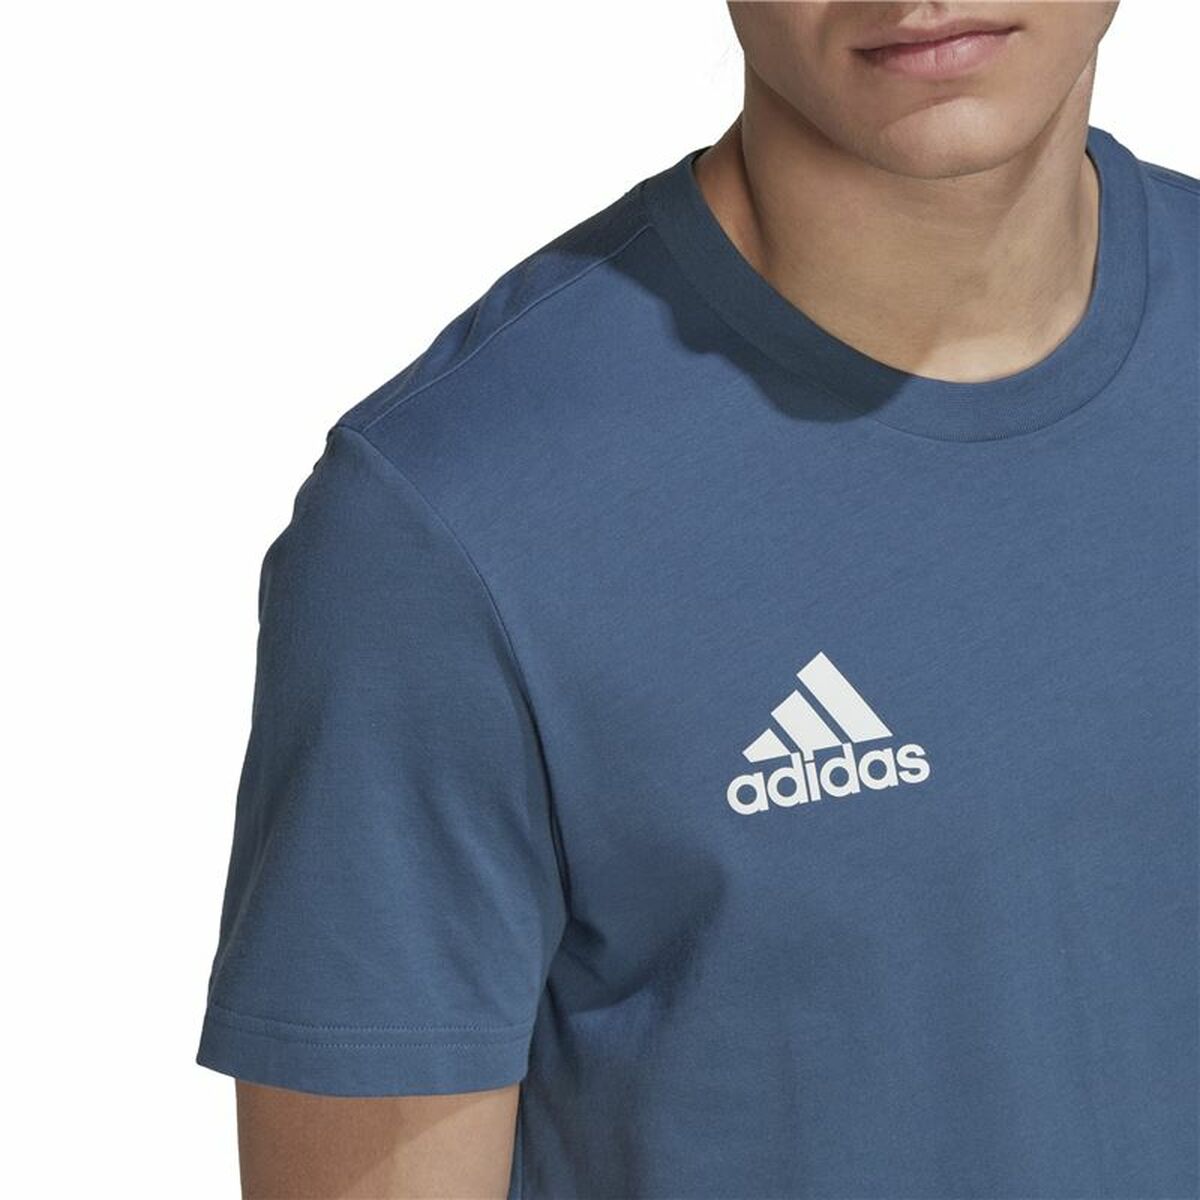 Men’s Short Sleeve T-Shirt Adidas All Blacks